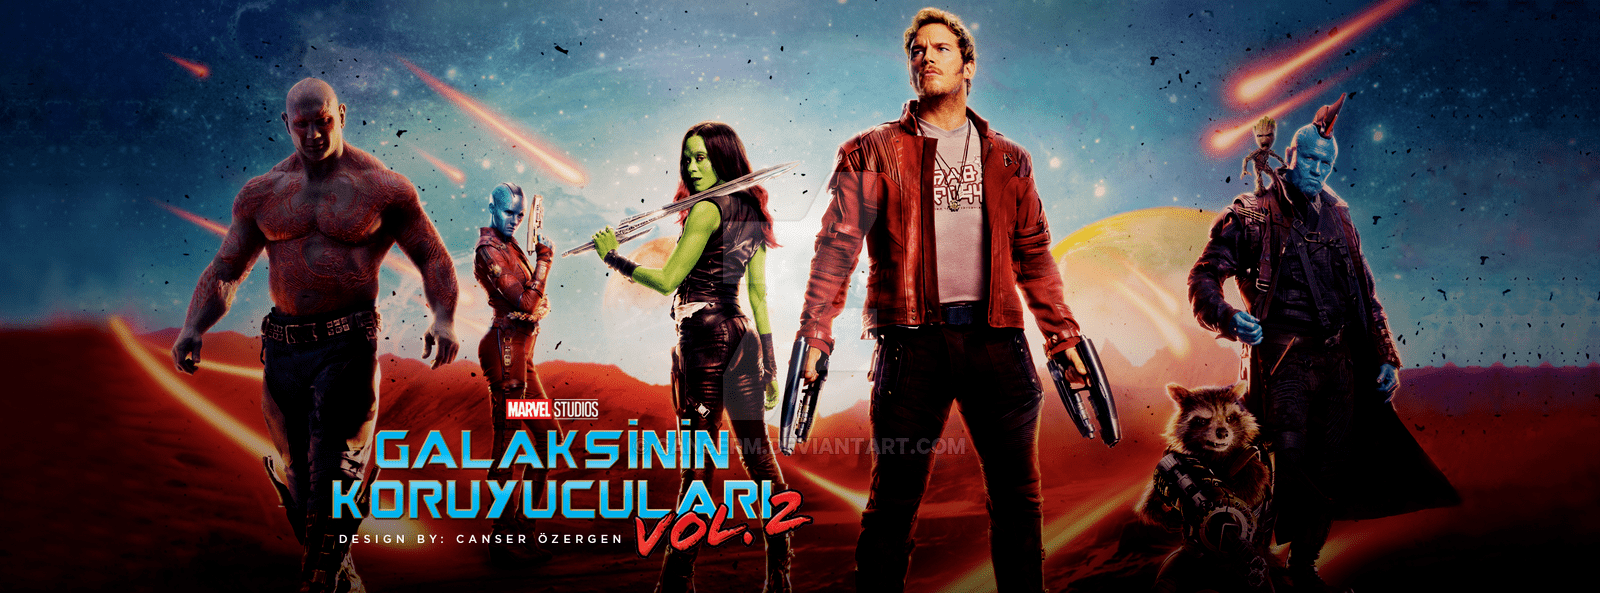 Guardians of the Galaxy Vol. 2 4K 2017 big poster